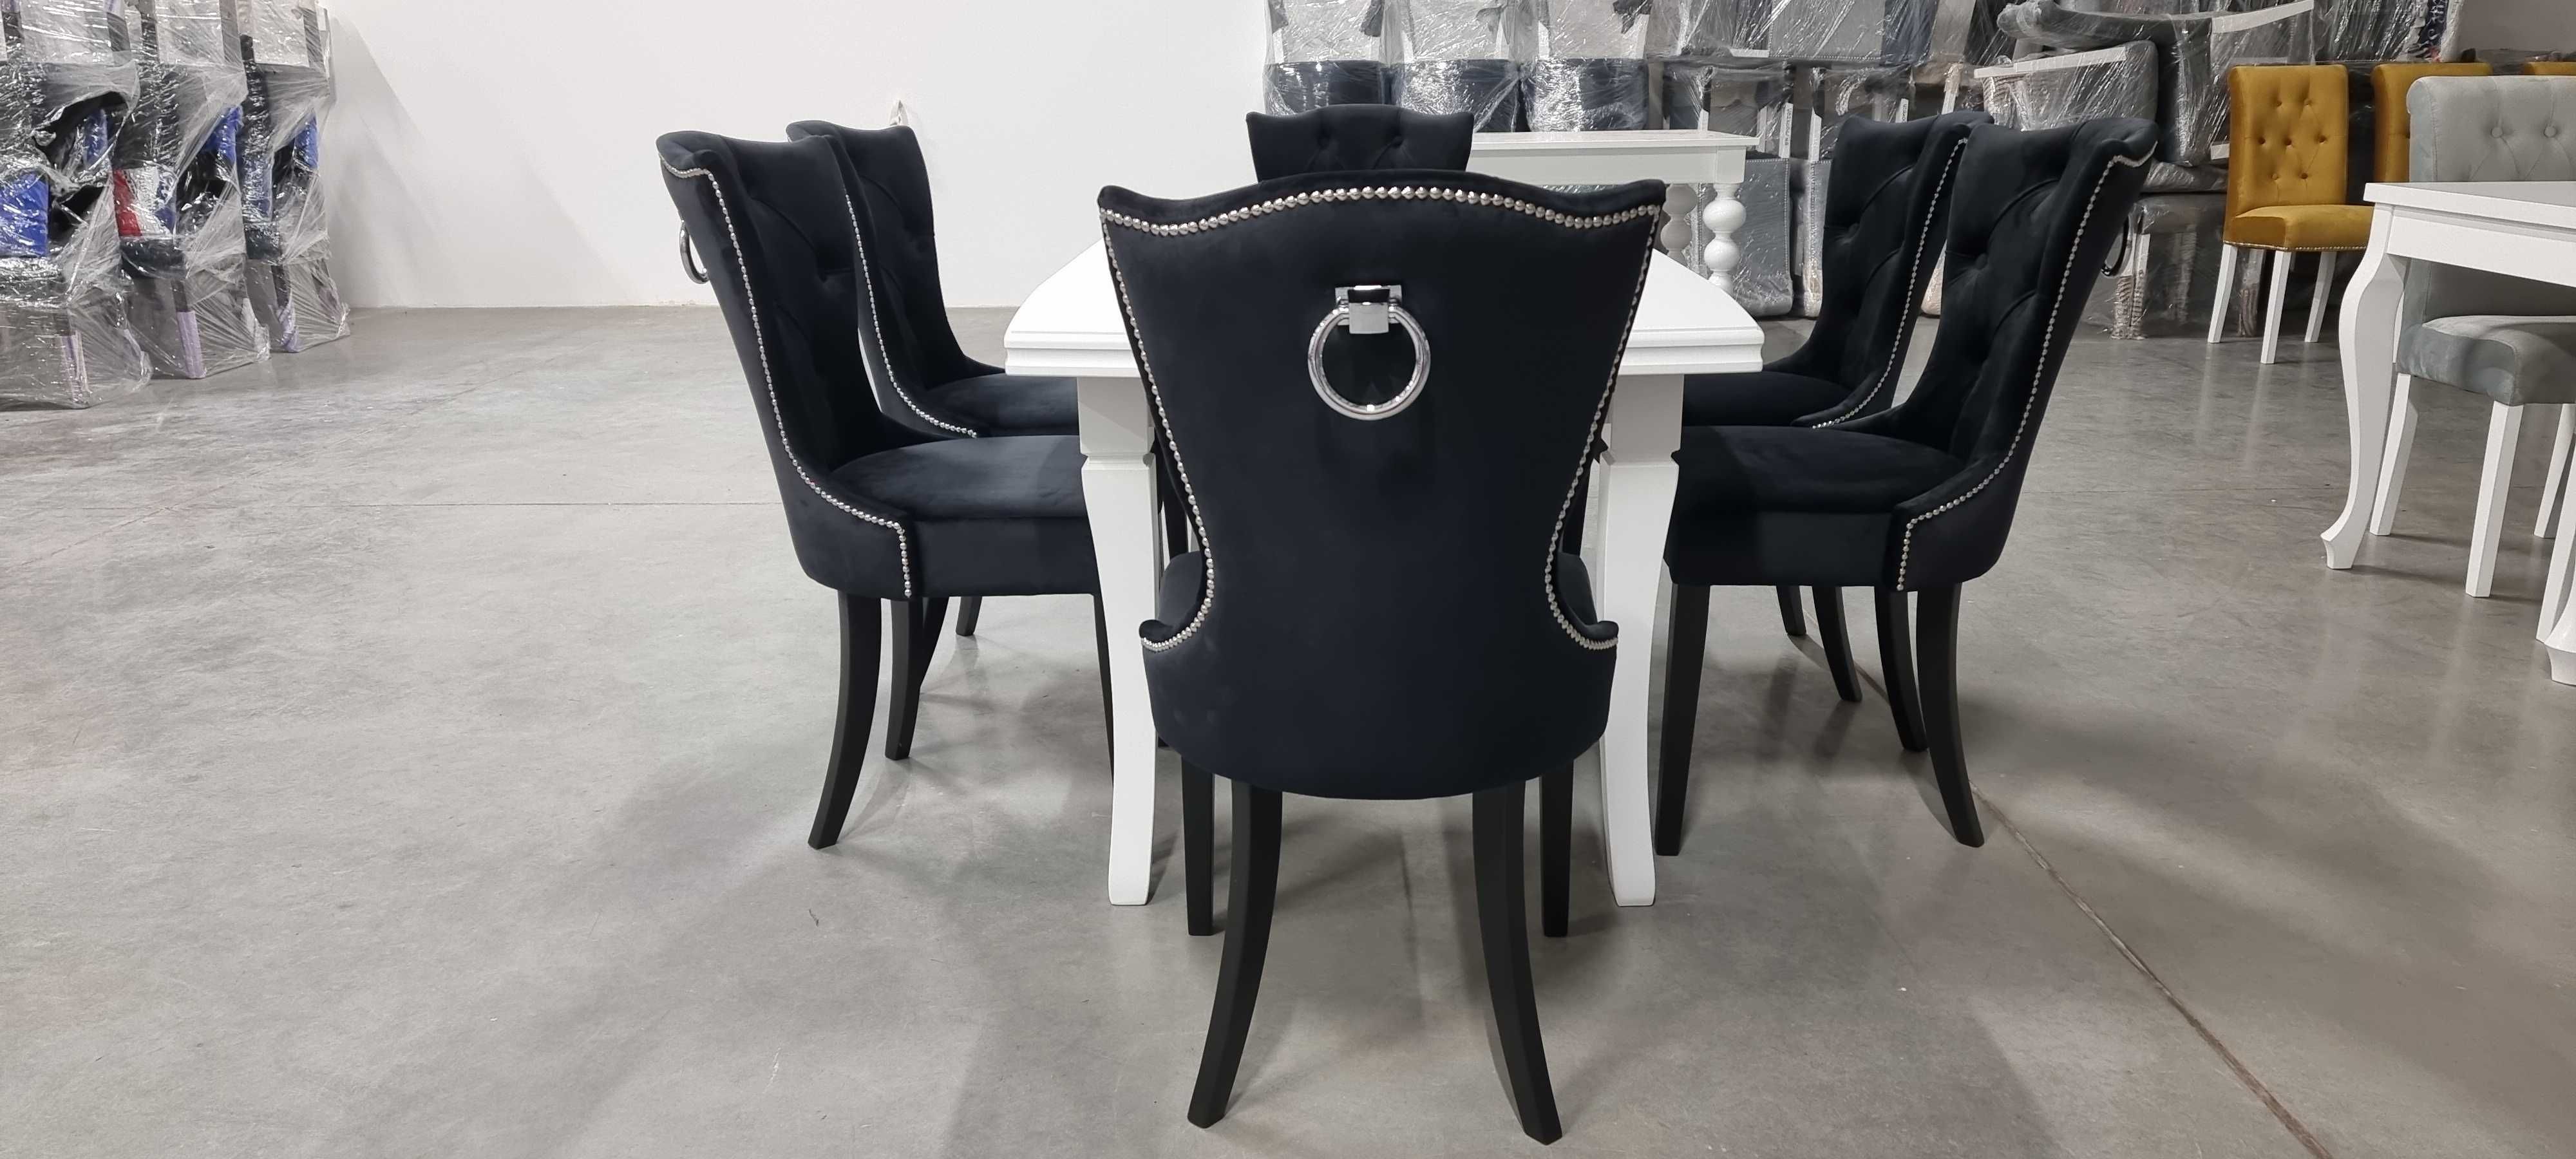 Wygodne krzesło glamour czarne do salonu i jadalni pikowane  Producent